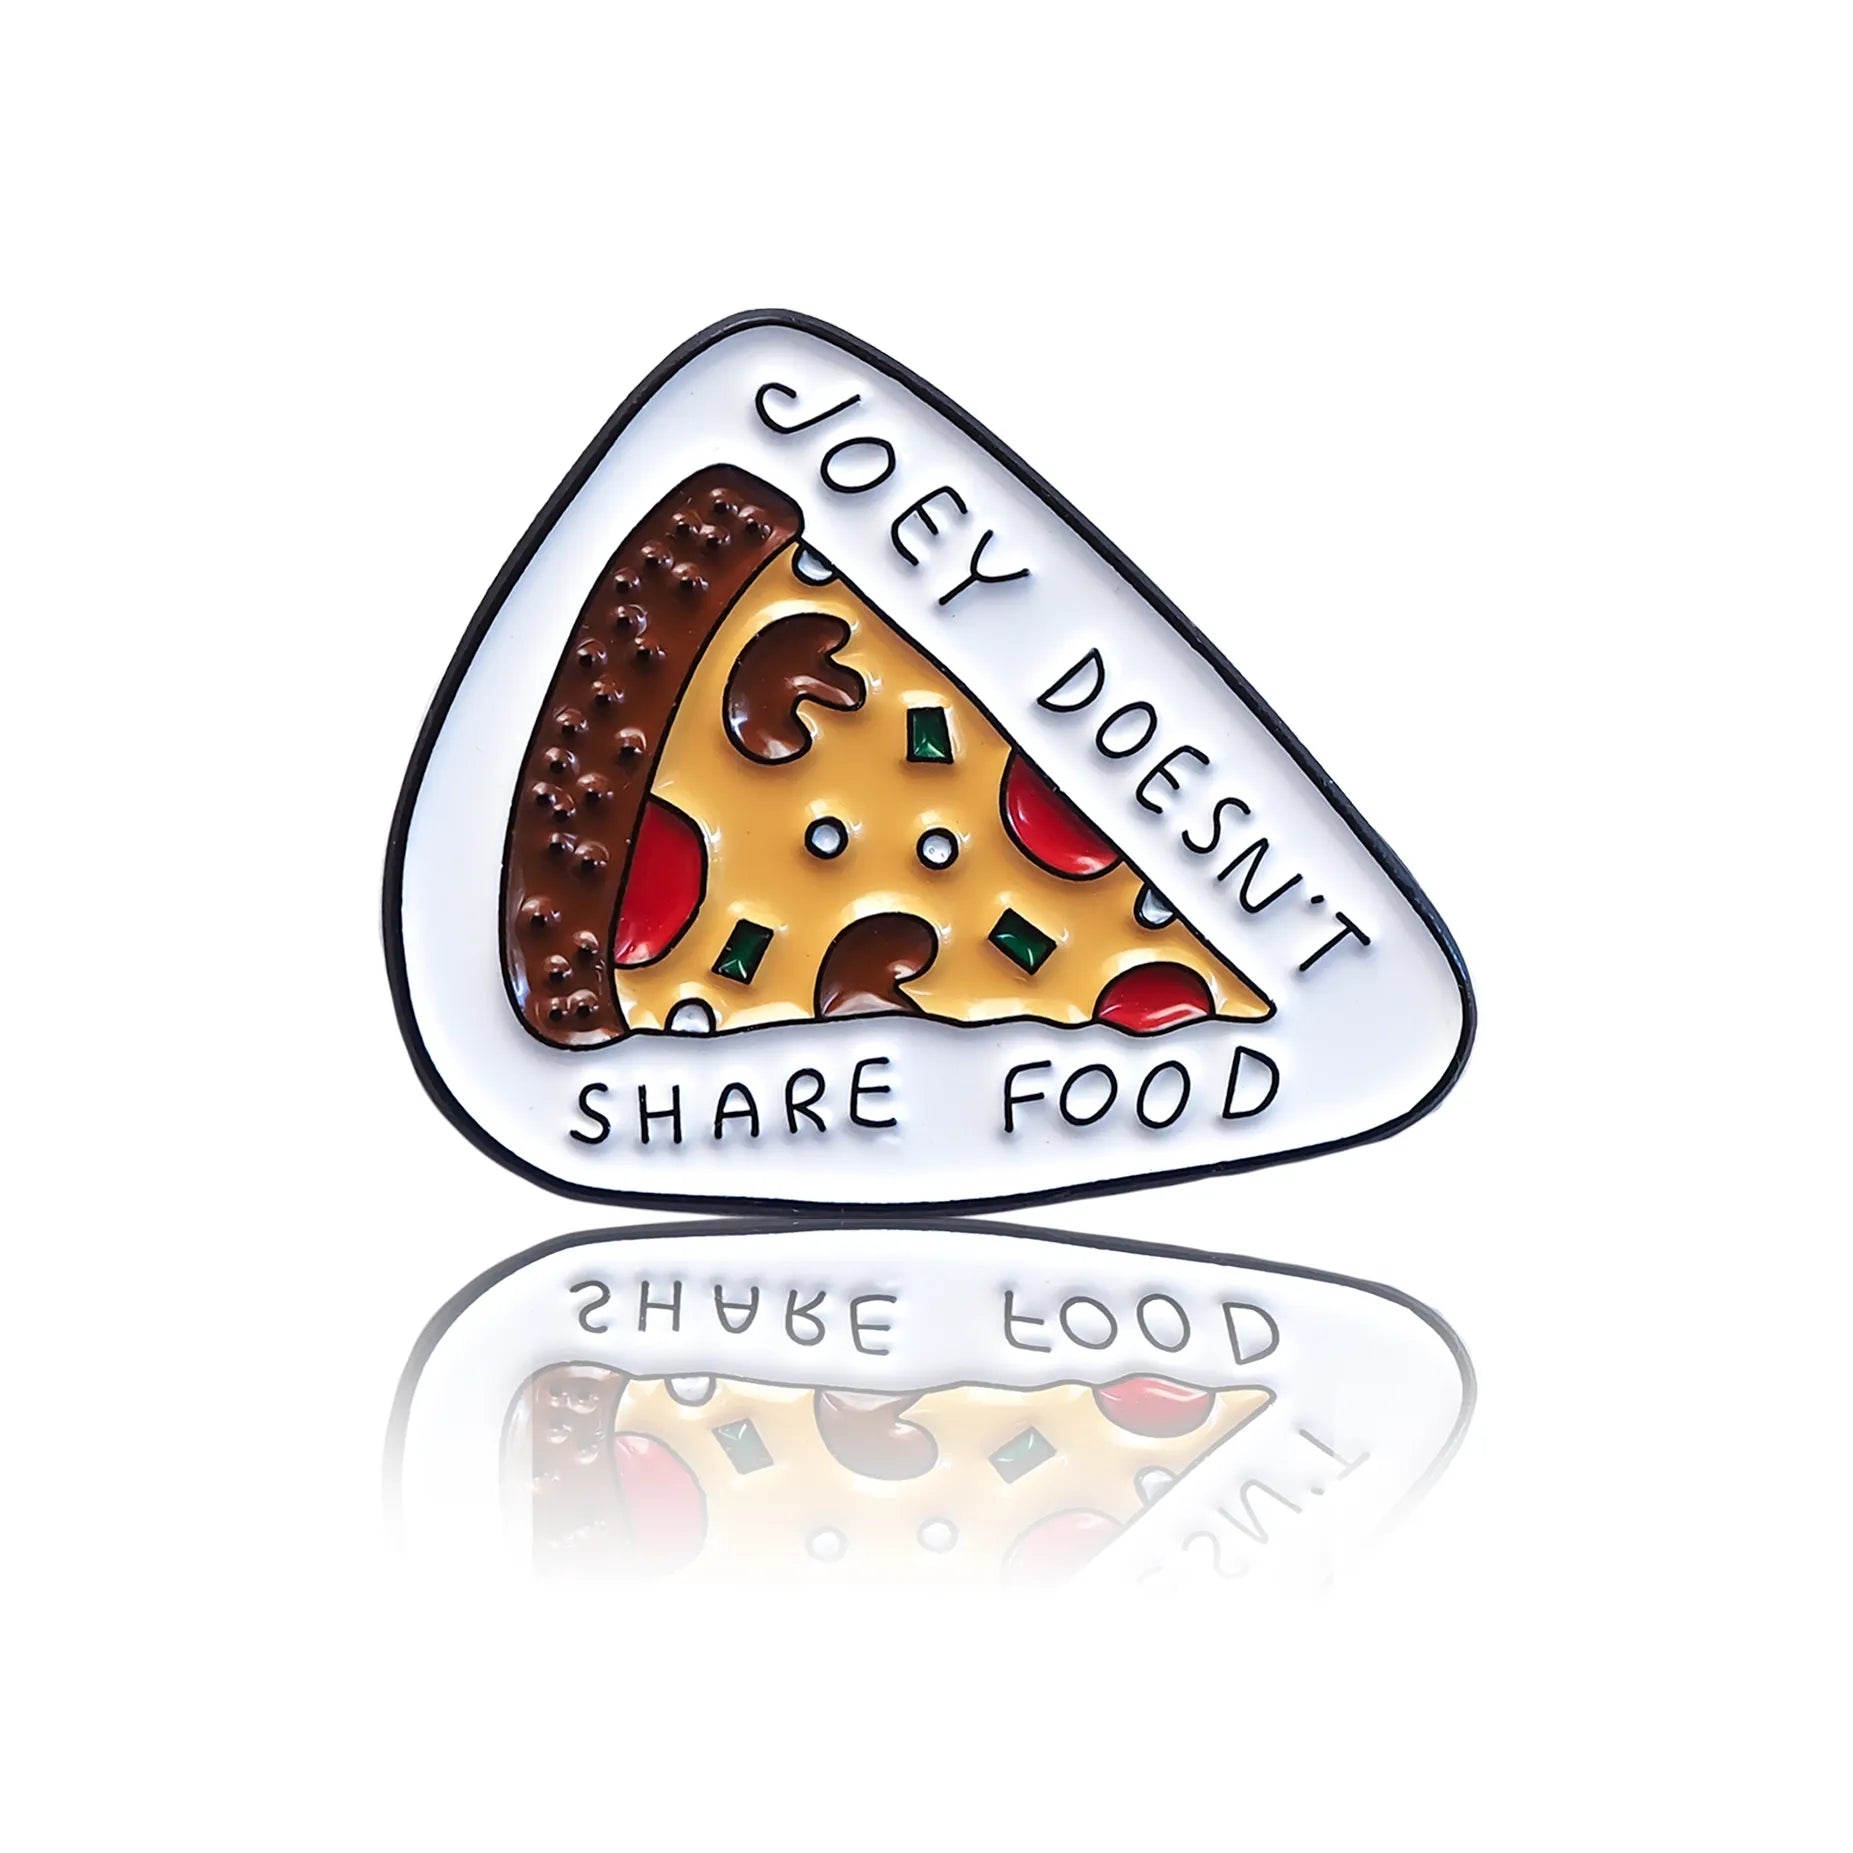 Kawałek kolorowej pizzy z napisem "Joey doesn't share food"